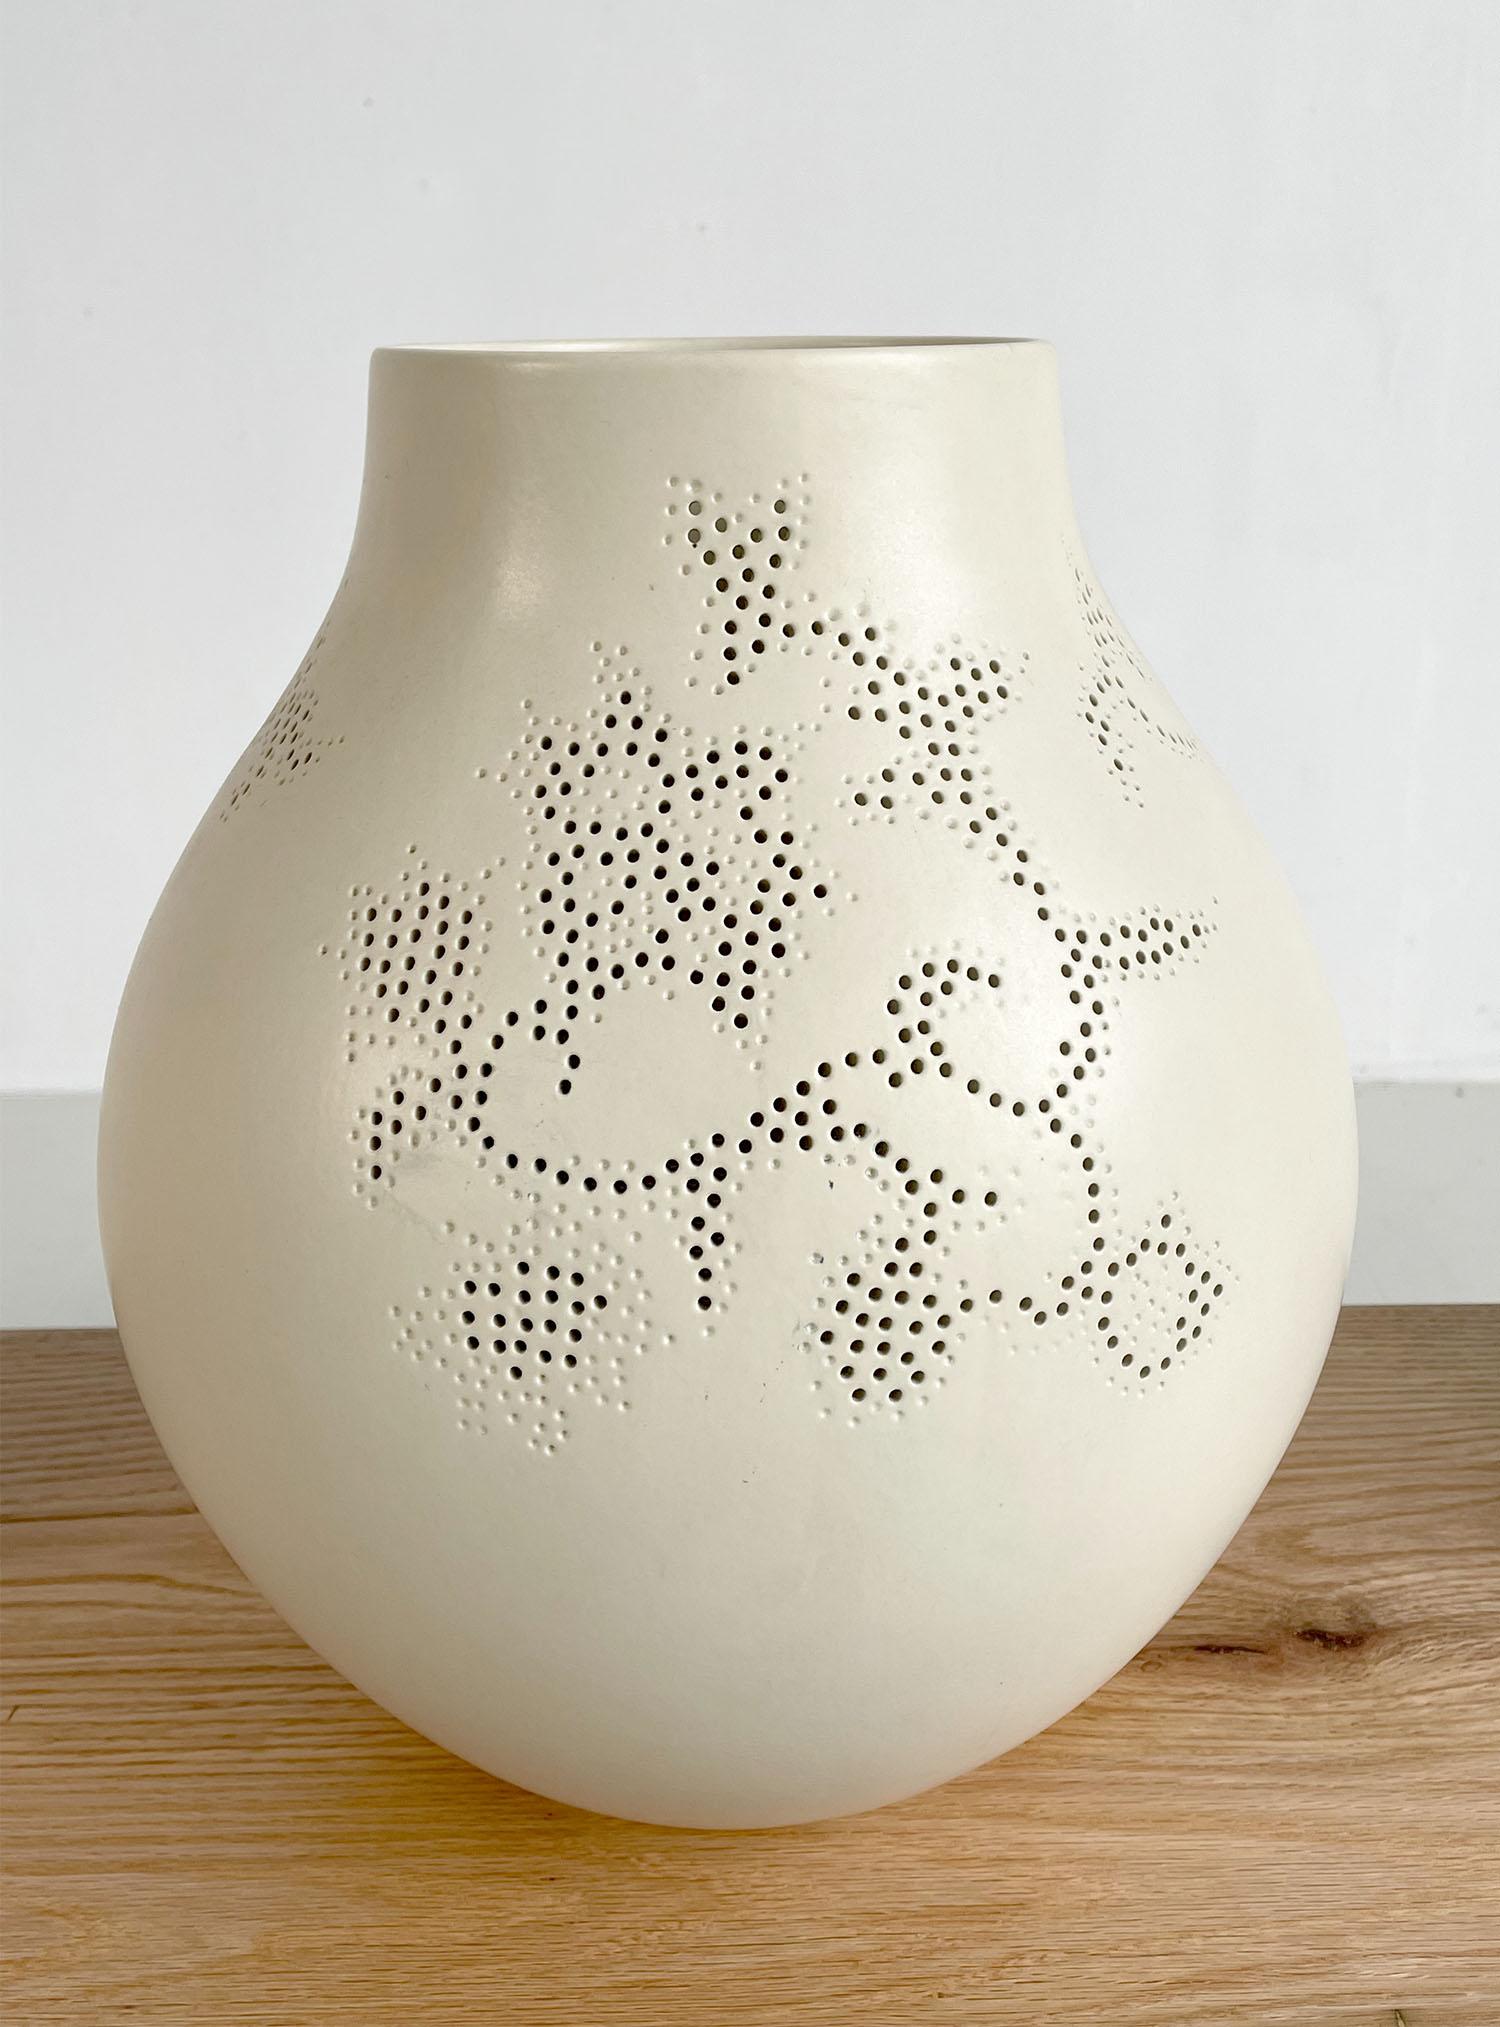 Rare série complète de 4 vases créés par Hella Jongerius pour IKEA PS Jonsberg, Suède 2005. Ces quatre grands vases sont fabriqués selon quatre techniques céramiques et leurs décorations font référence à des régions spécifiques du monde, l'Union